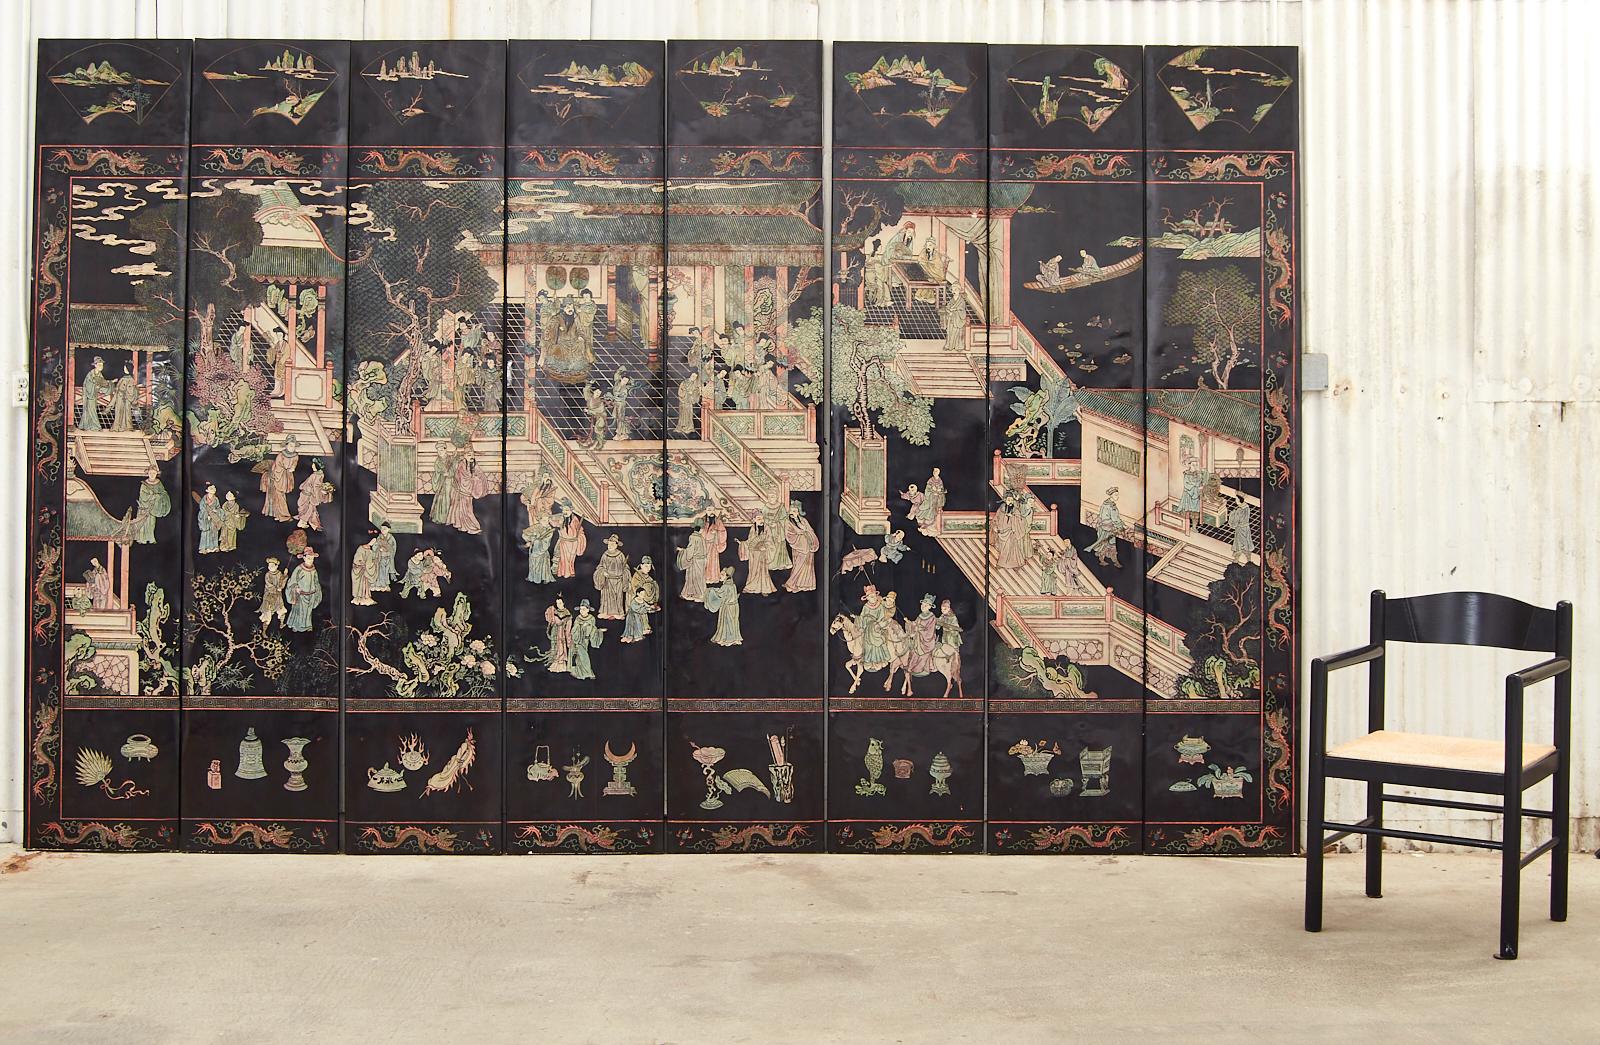 Rare paravent à huit panneaux laqués, réalisé dans le style de la dynastie Ming par les artisans du Studio Gracie à New York. Le paravent moderne en coromandel acheté chez Gracie se compose de panneaux épais et lisses en laque noire, incisés de